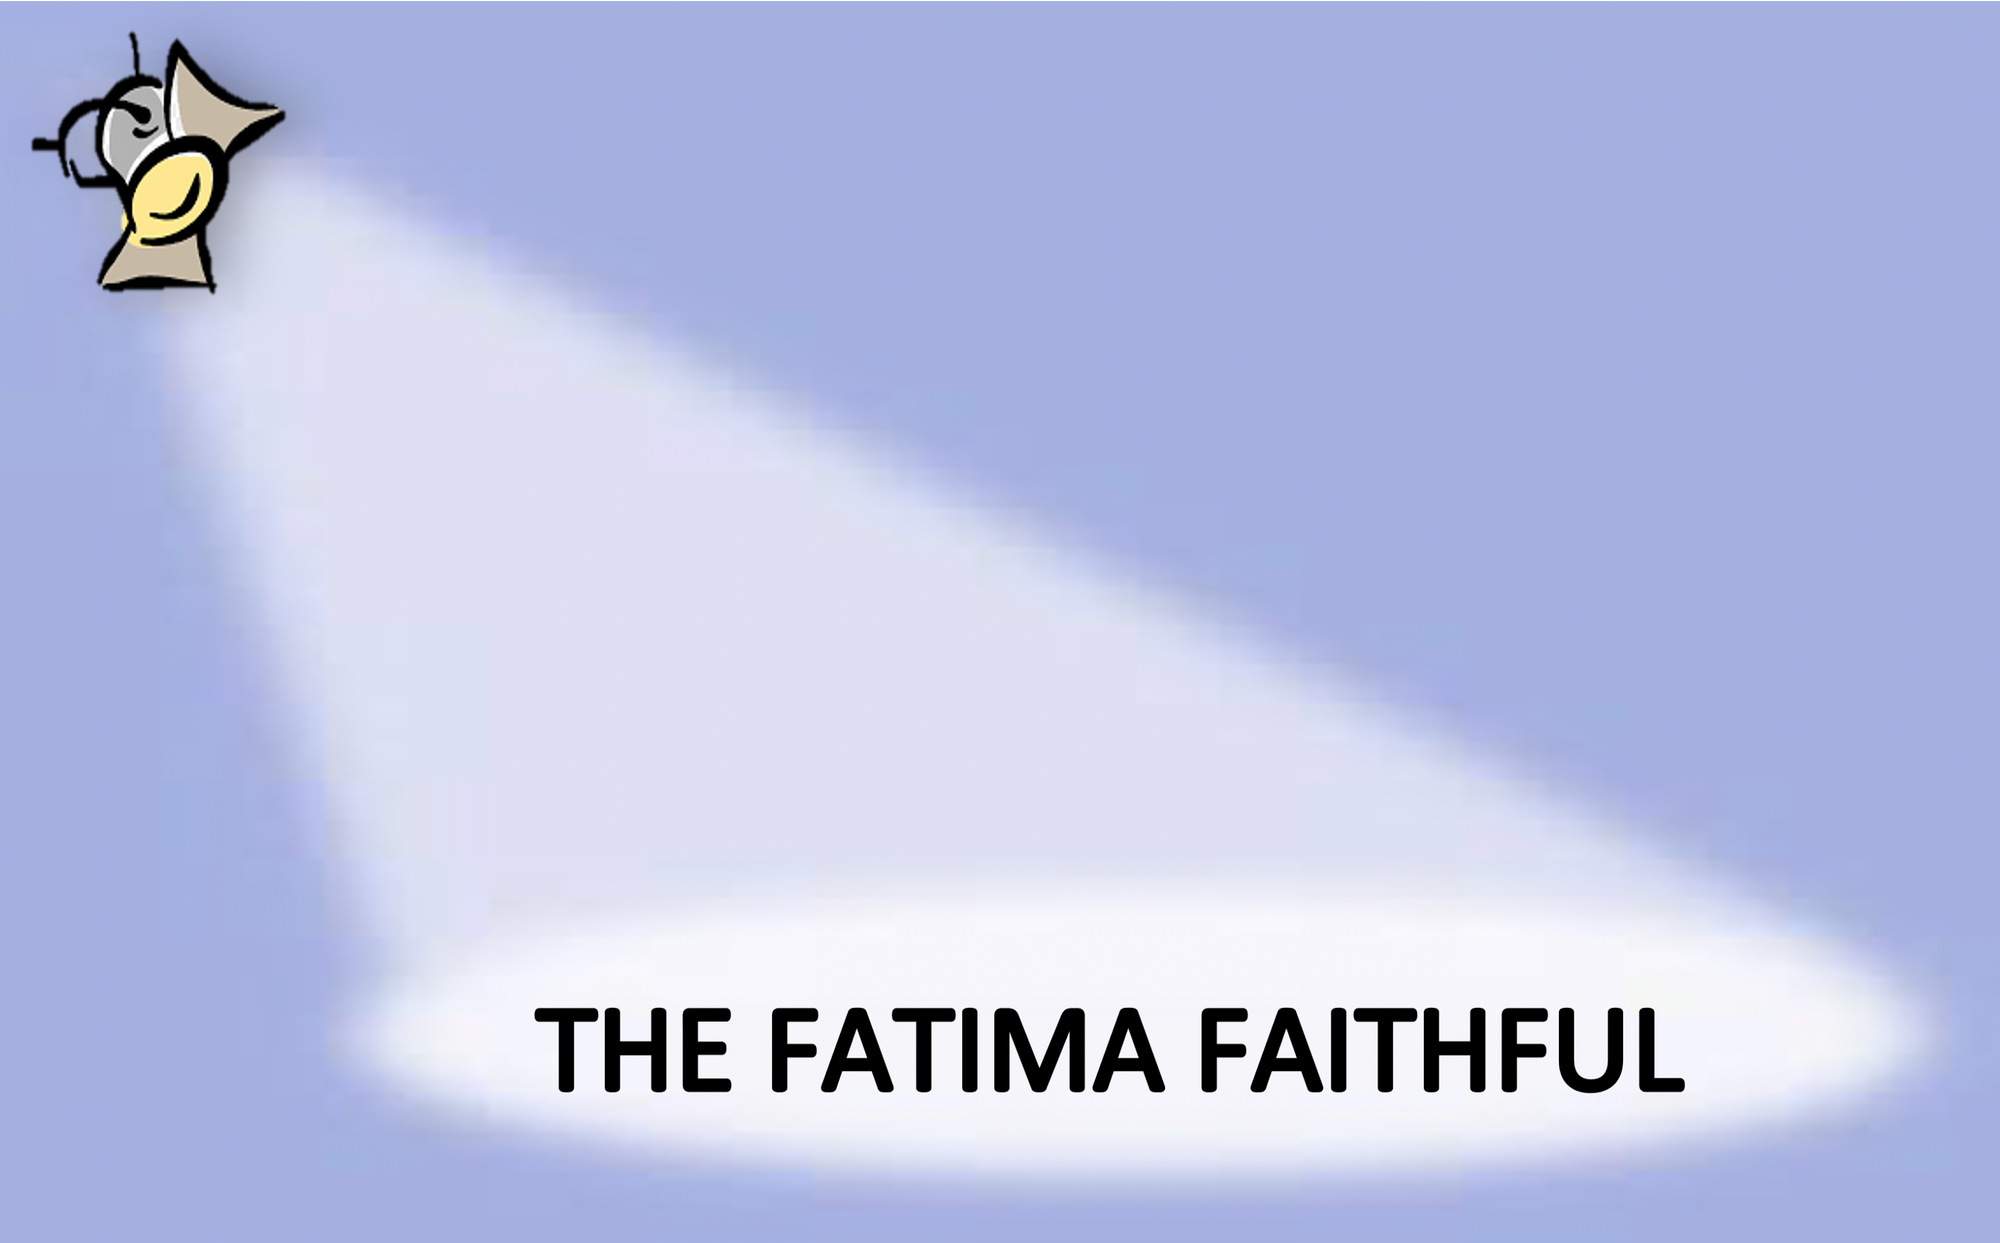 The Fatima Faithful for January 2021